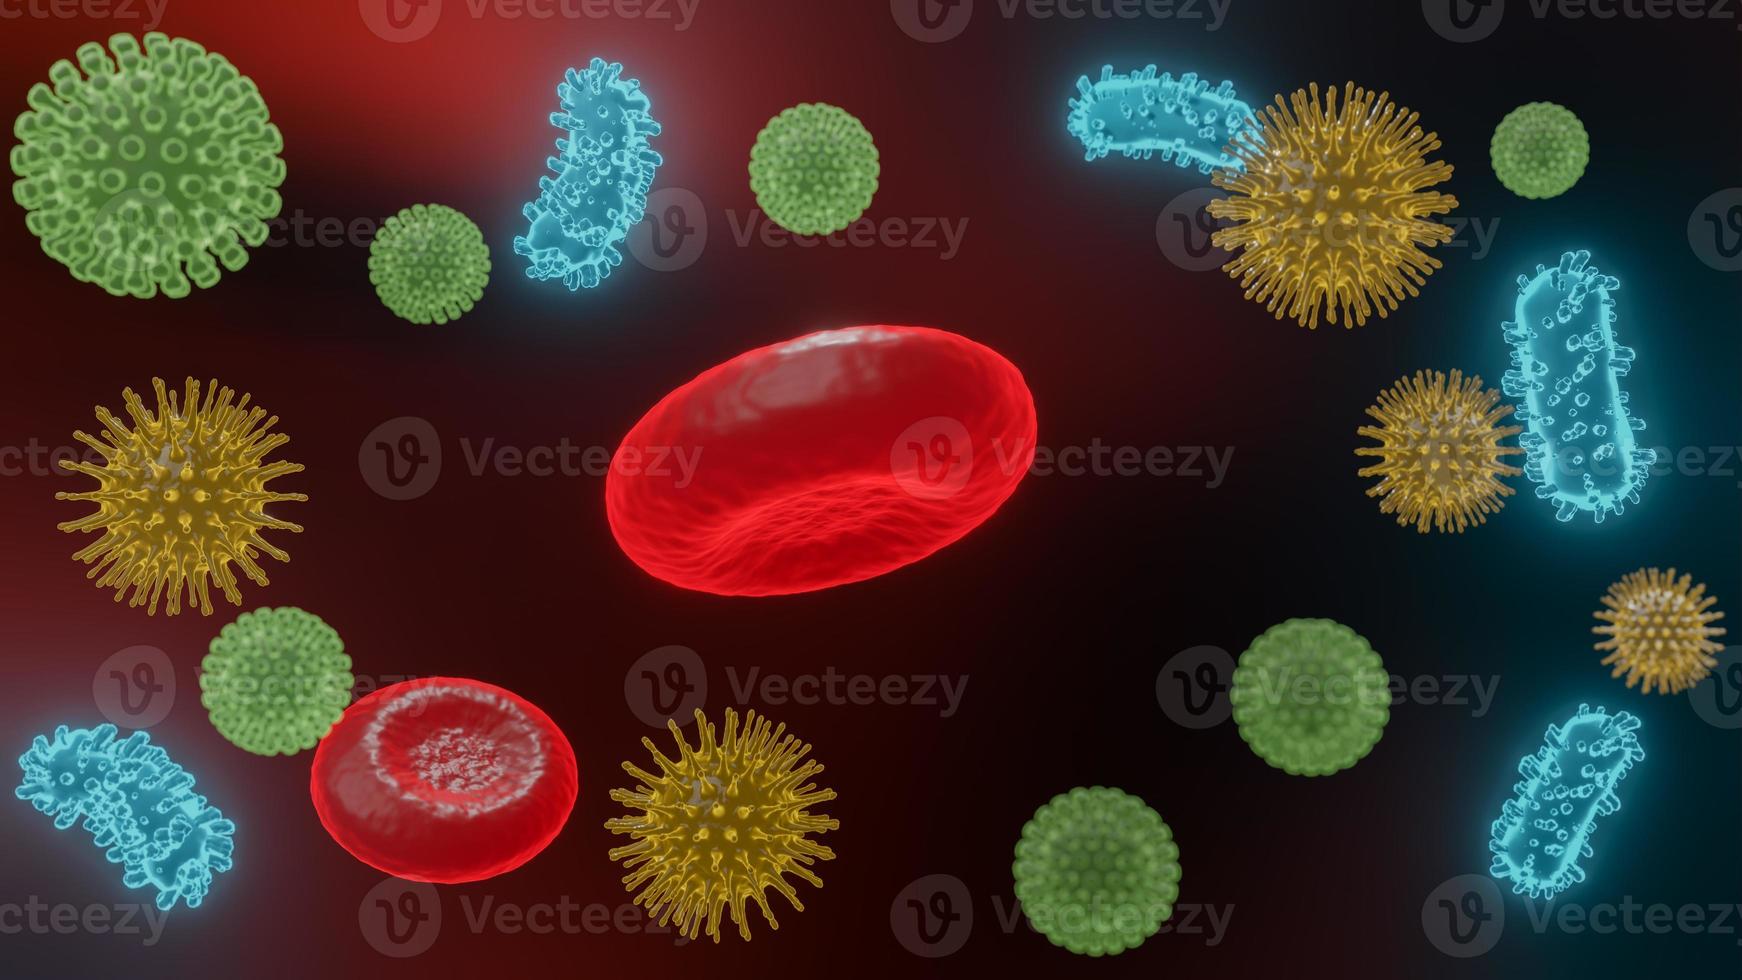 vírus patogênicos que causam infecção no organismo hospedeiro, surto de doença viral, para fundo ou recurso gráfico, renderização 3d foto